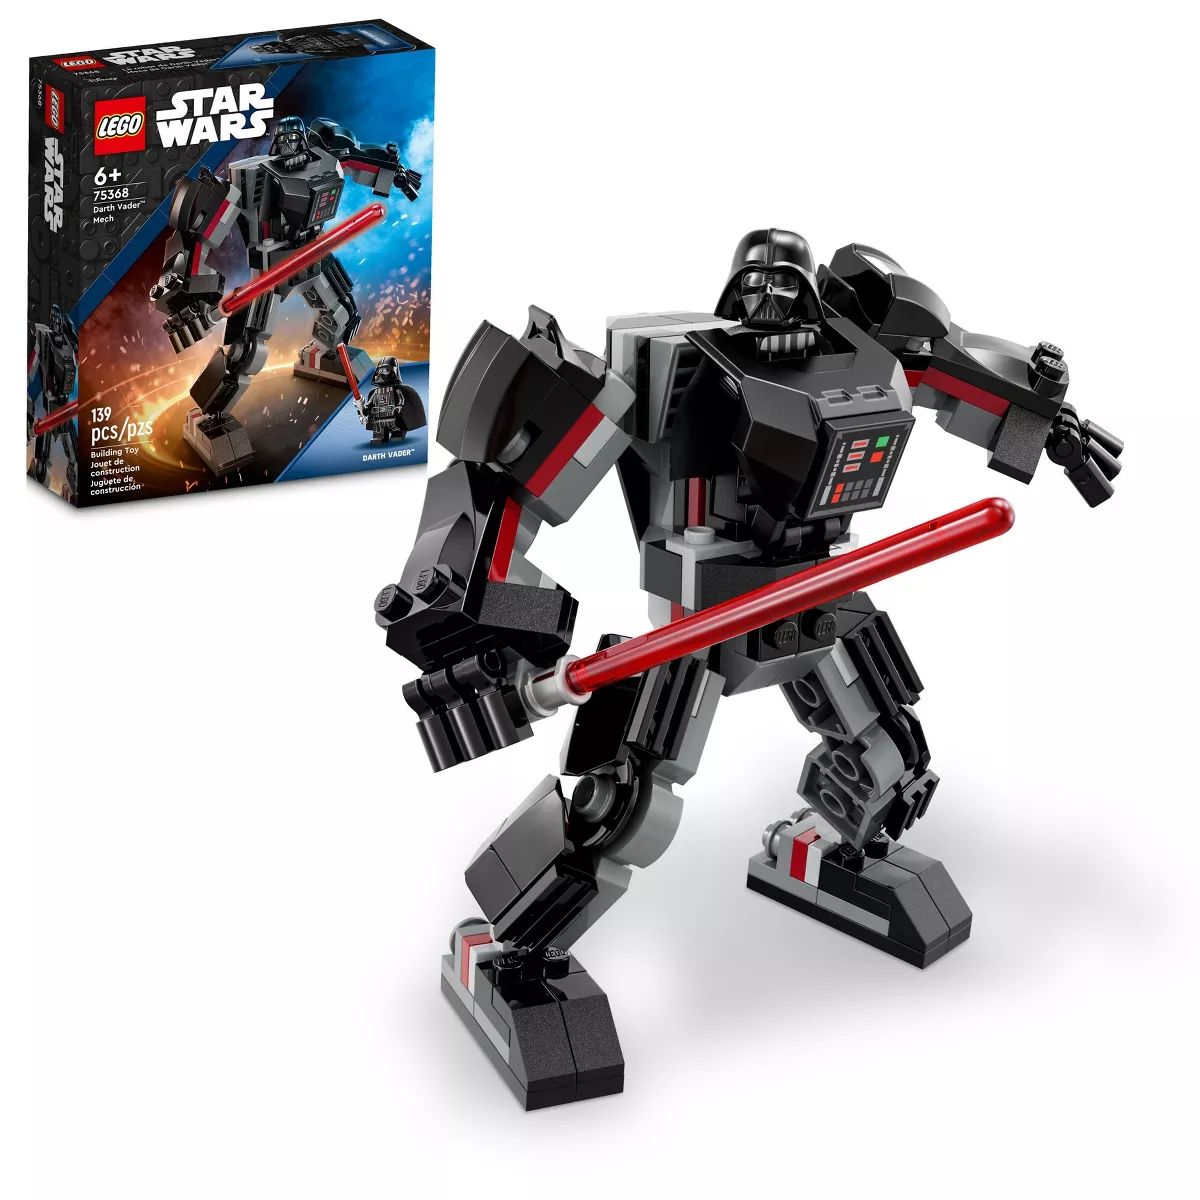 LEGO Star Wars Darth Vader Mech Action Figure 75368 | Target